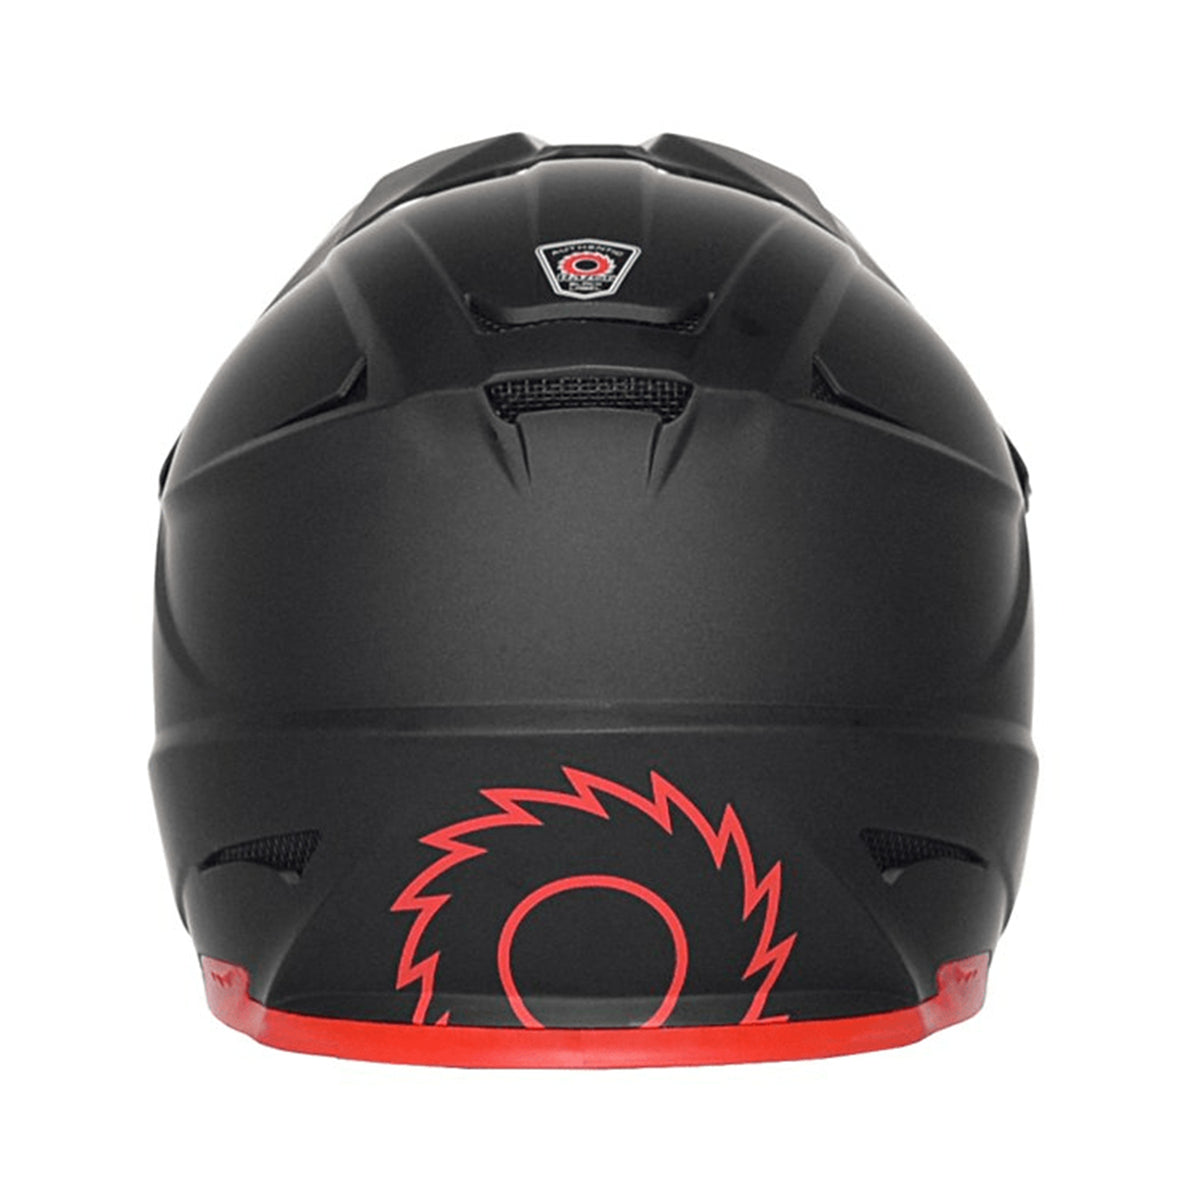 Razor® Full Face Youth Multi-Sport Helmet | Helmet for Kids Ages 8+